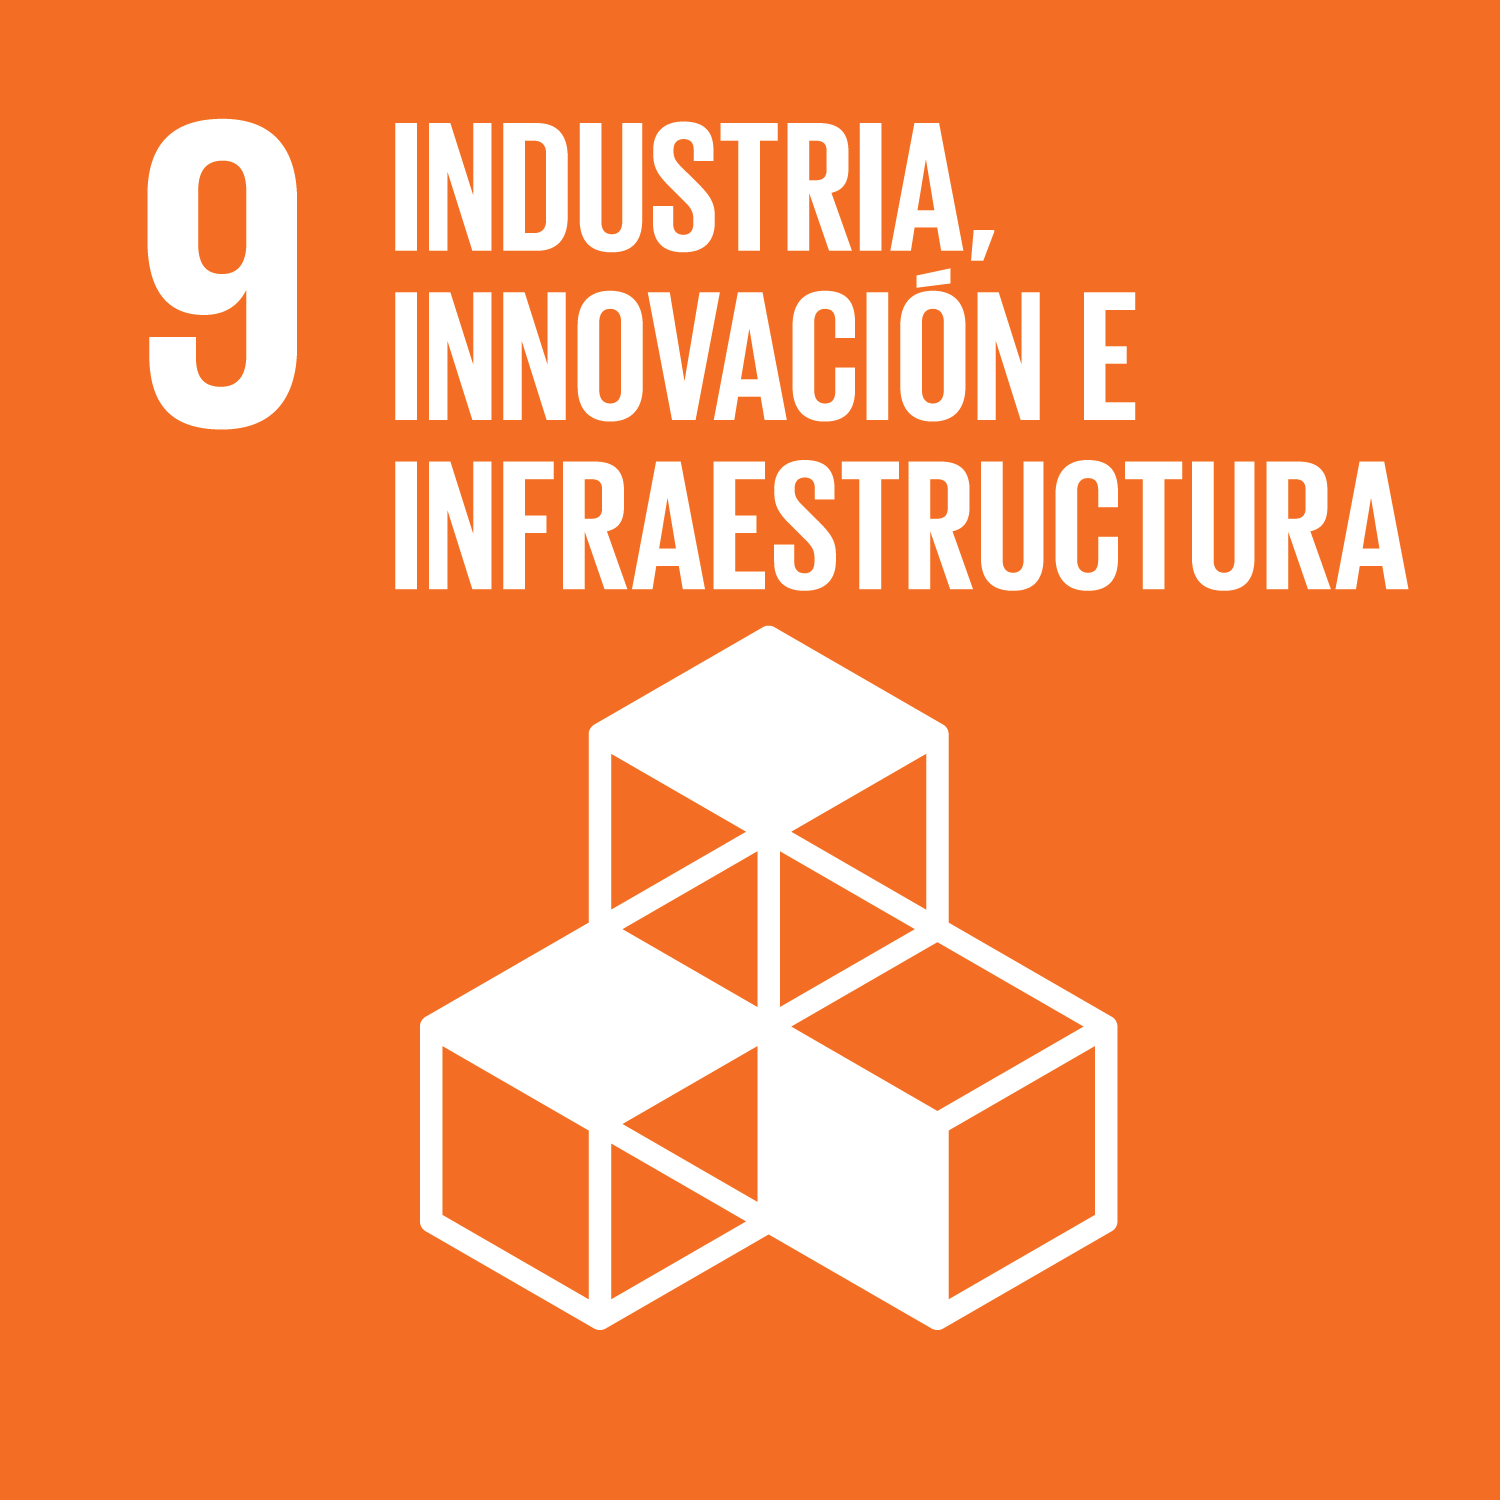 Construir infraestructuras resilientes, promover la industrialización inclusiva y sostenible y fomentar la innovación